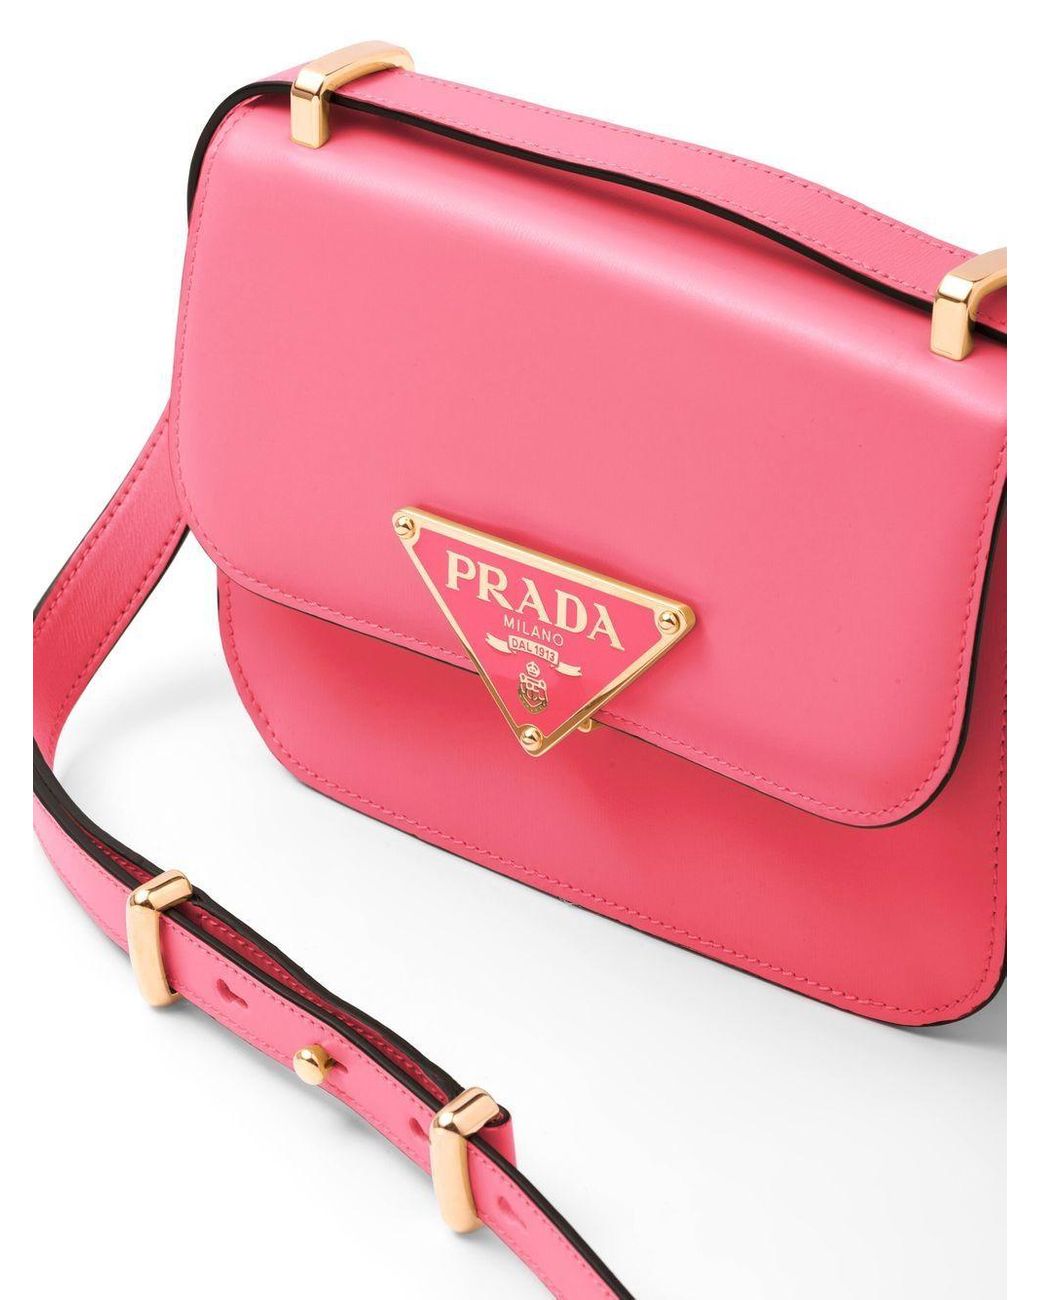 Prada Emblème Saffiano Leather Shoulder Bag in Pink | Lyst